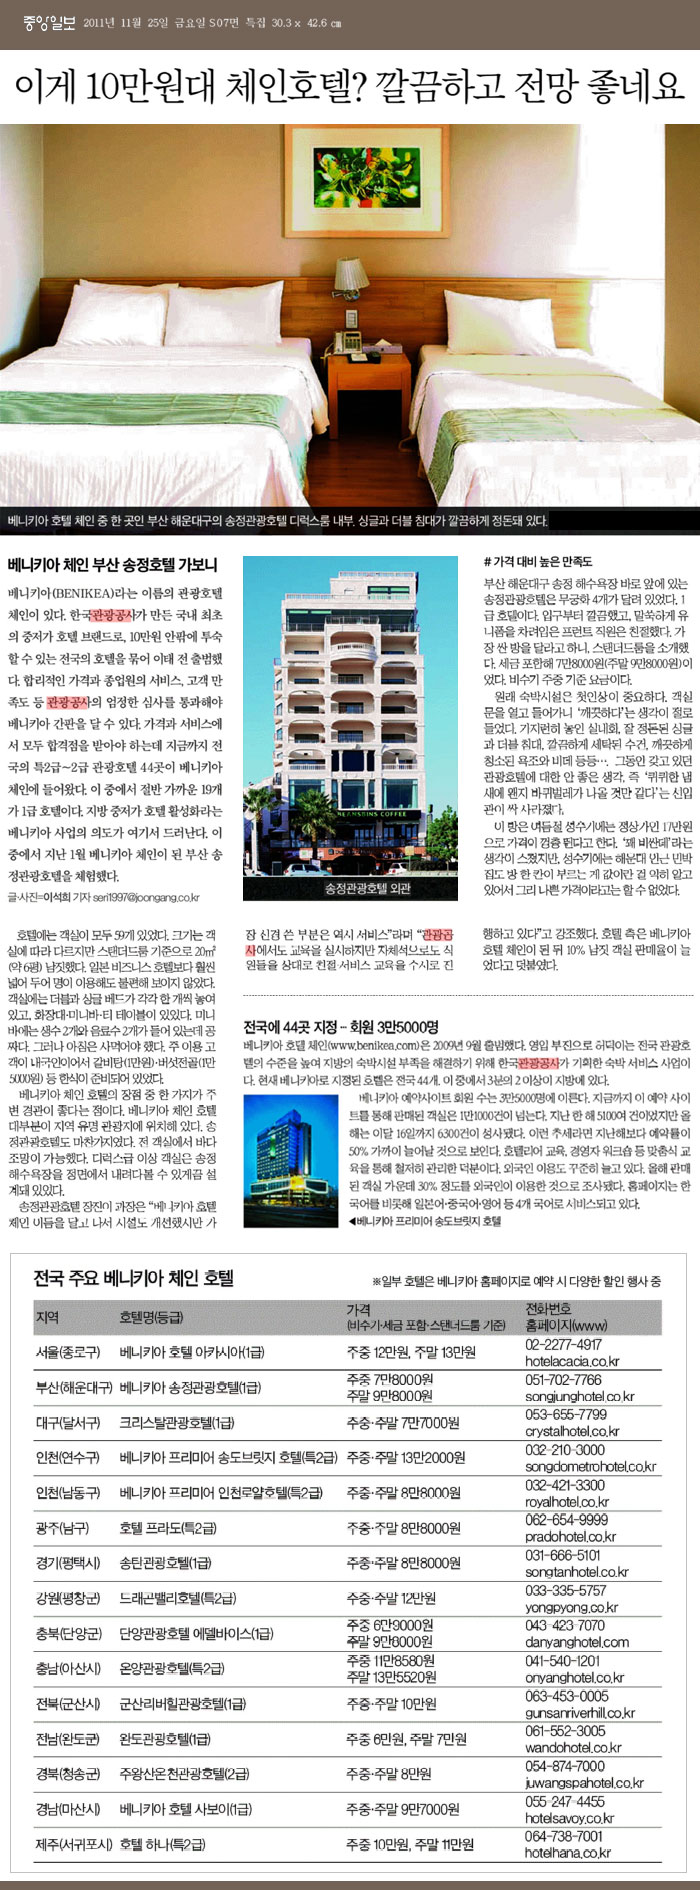 [중앙일보] 베니키아 체인 송정호텔